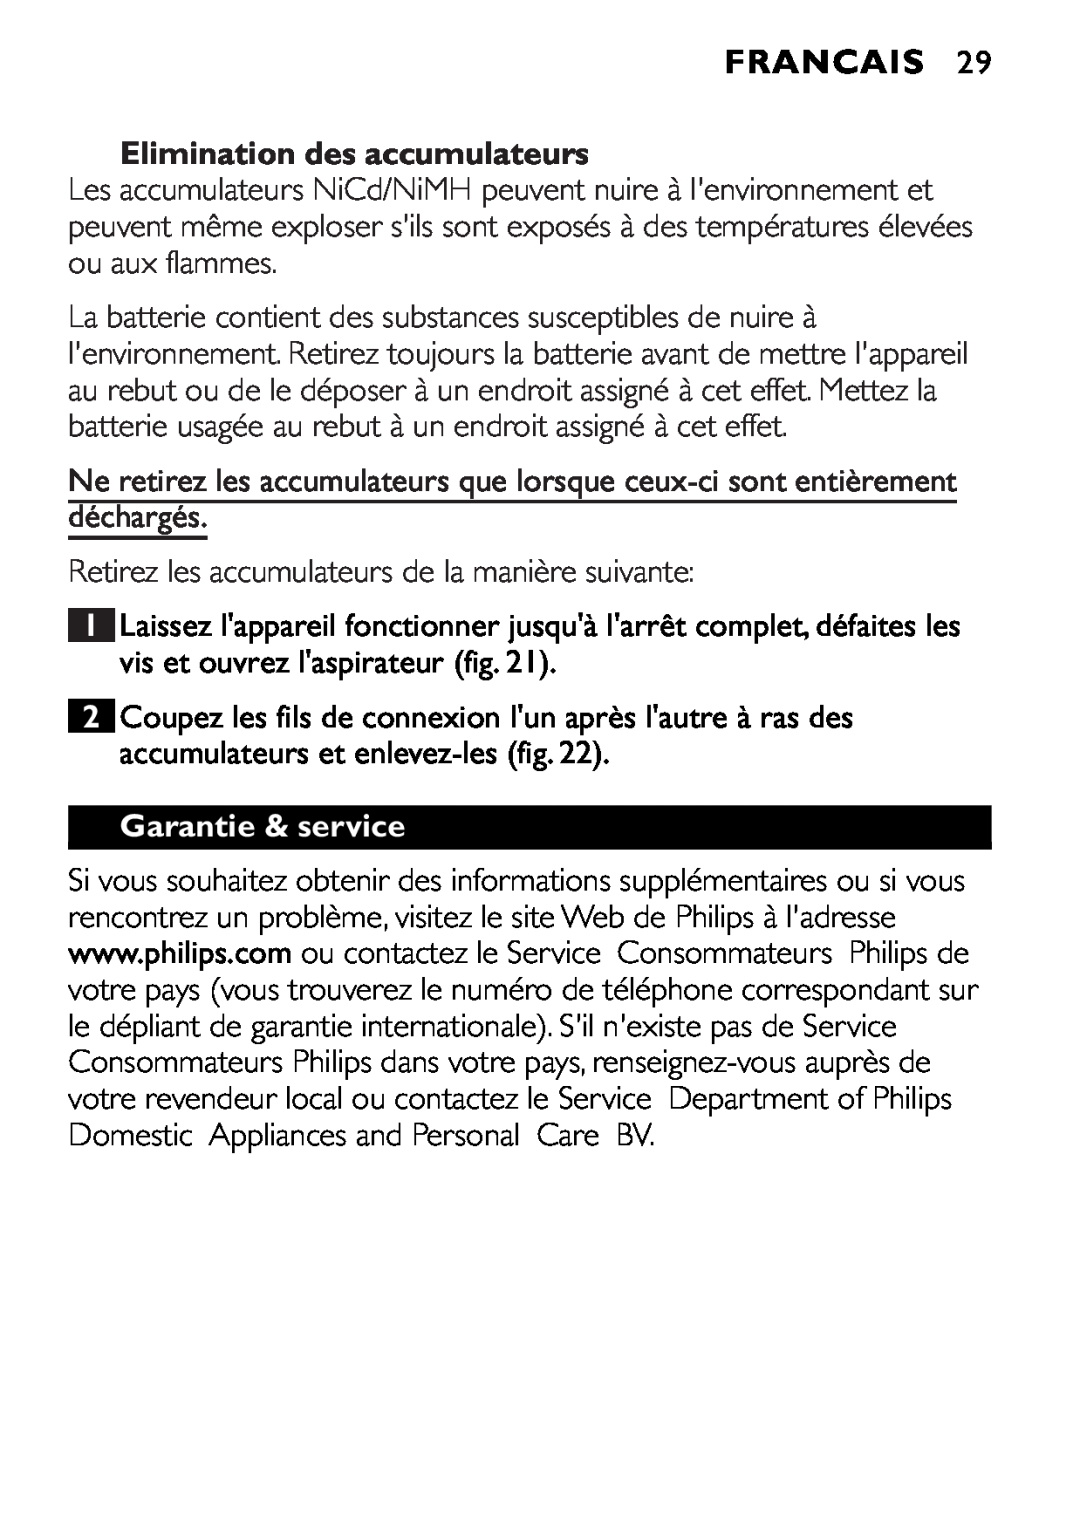 Philips FC6055 manual Elimination des accumulateurs, Garantie & service, Francais 